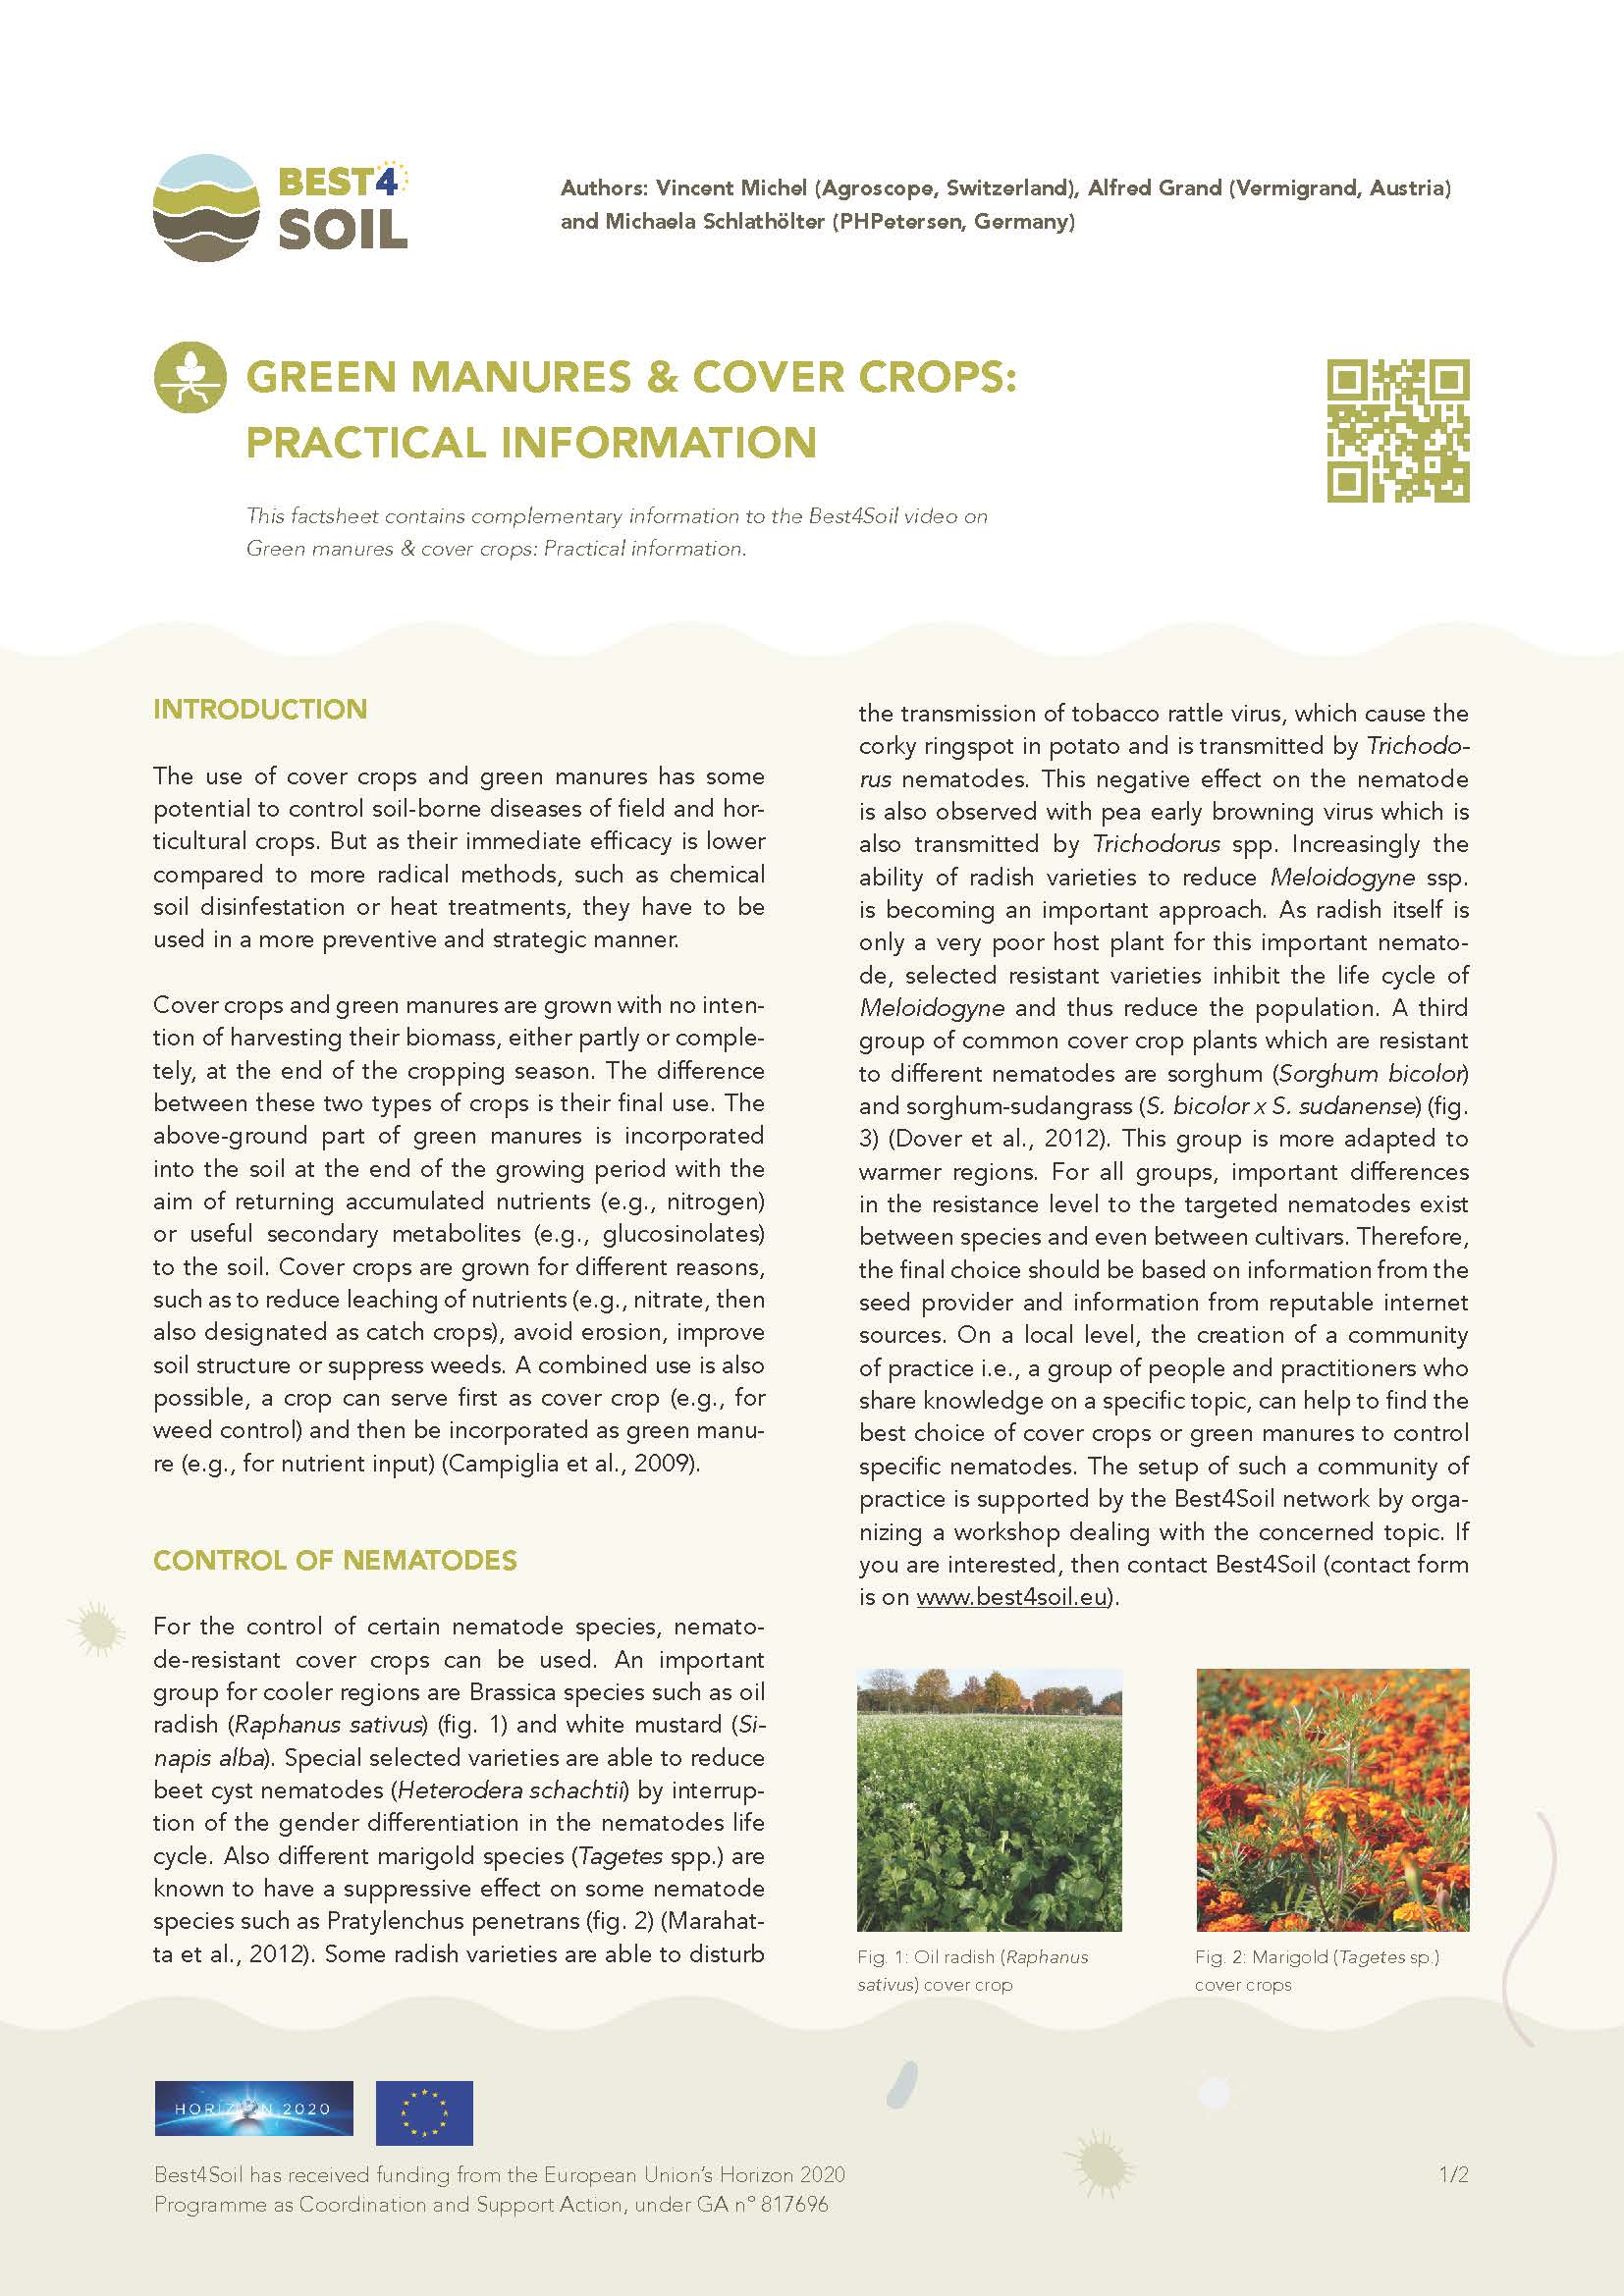 Зелено ђубриво и покровни усеви: практичне информације (Бест4Соил Фацтсхеет)